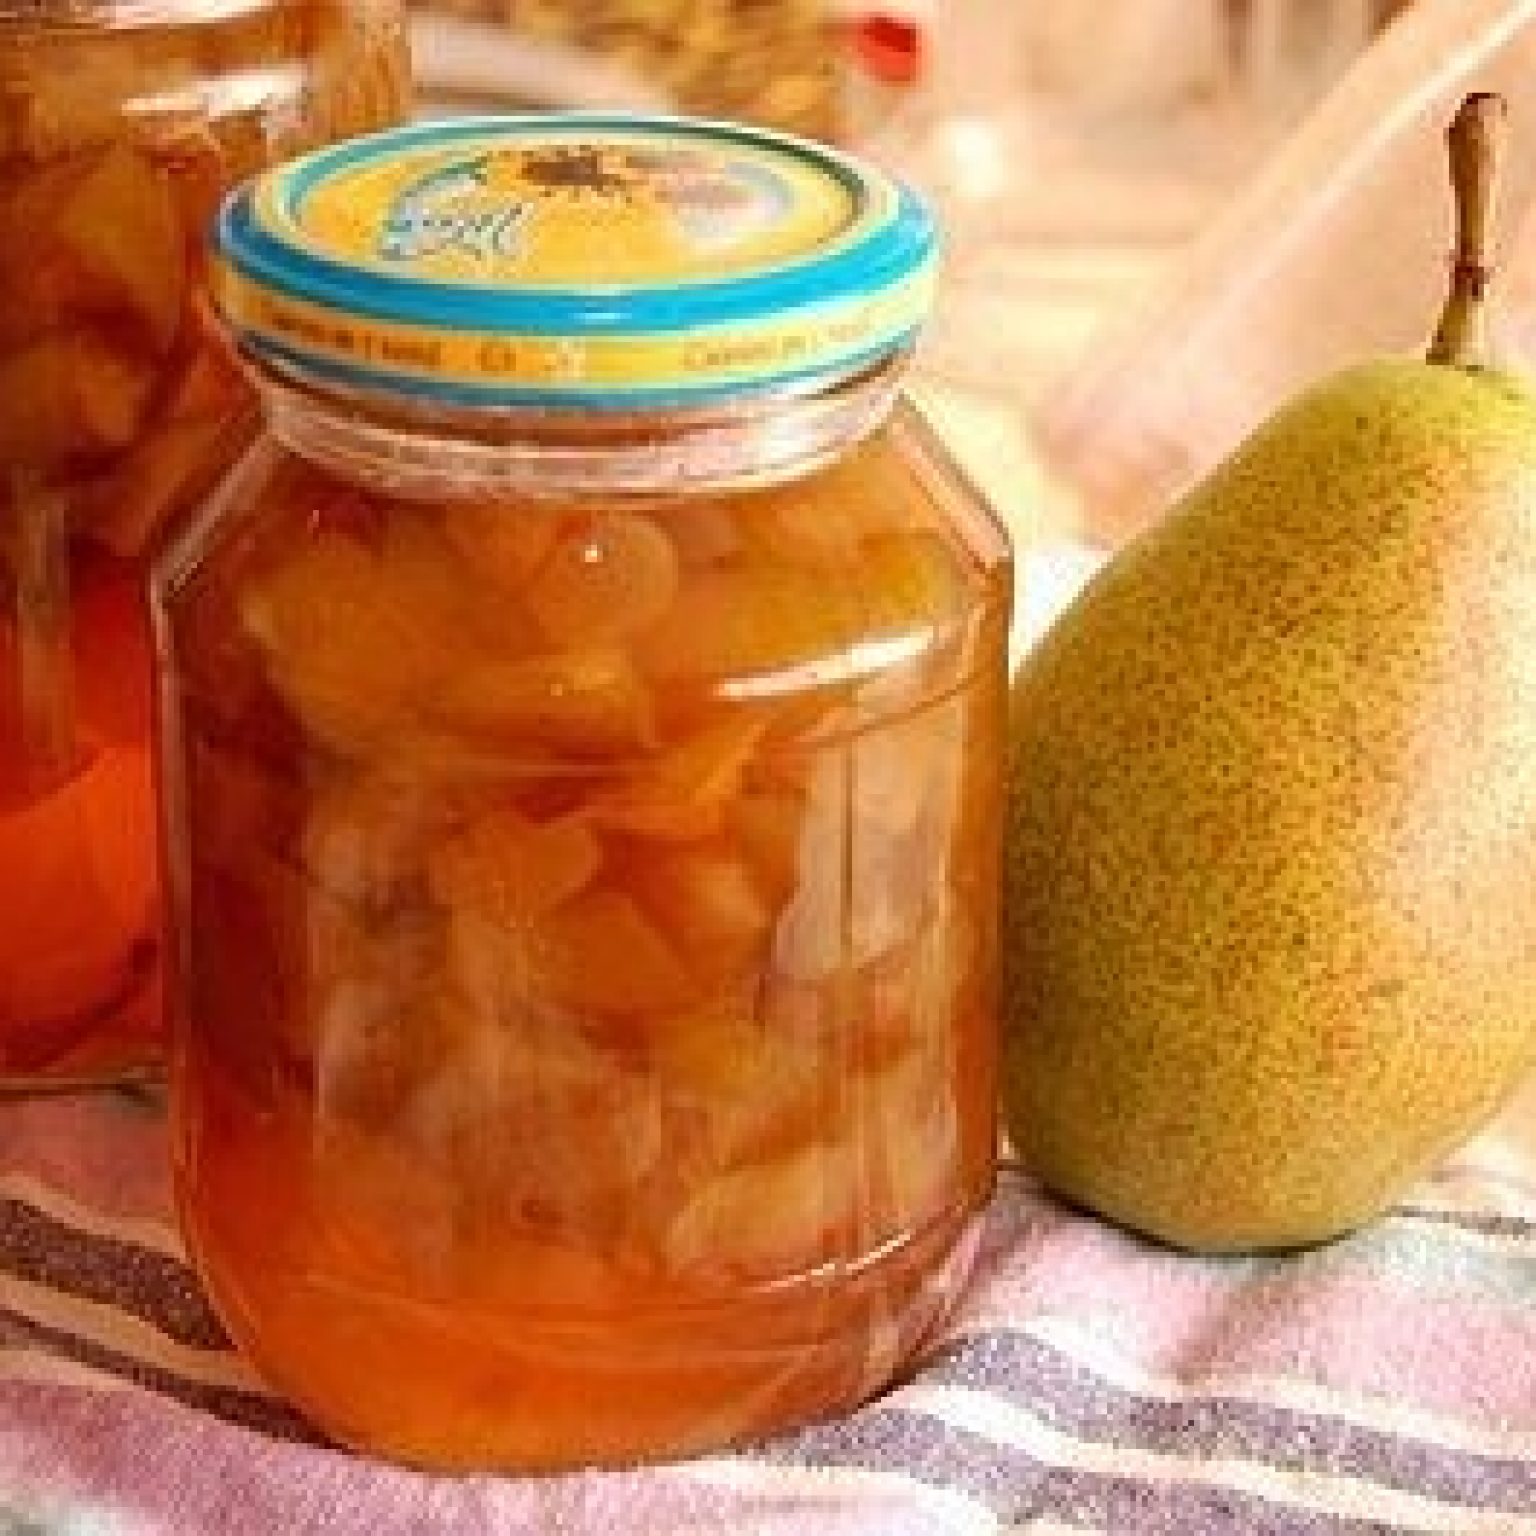 Варенье из груш с лимоном: простые рецепты зимних заготовок